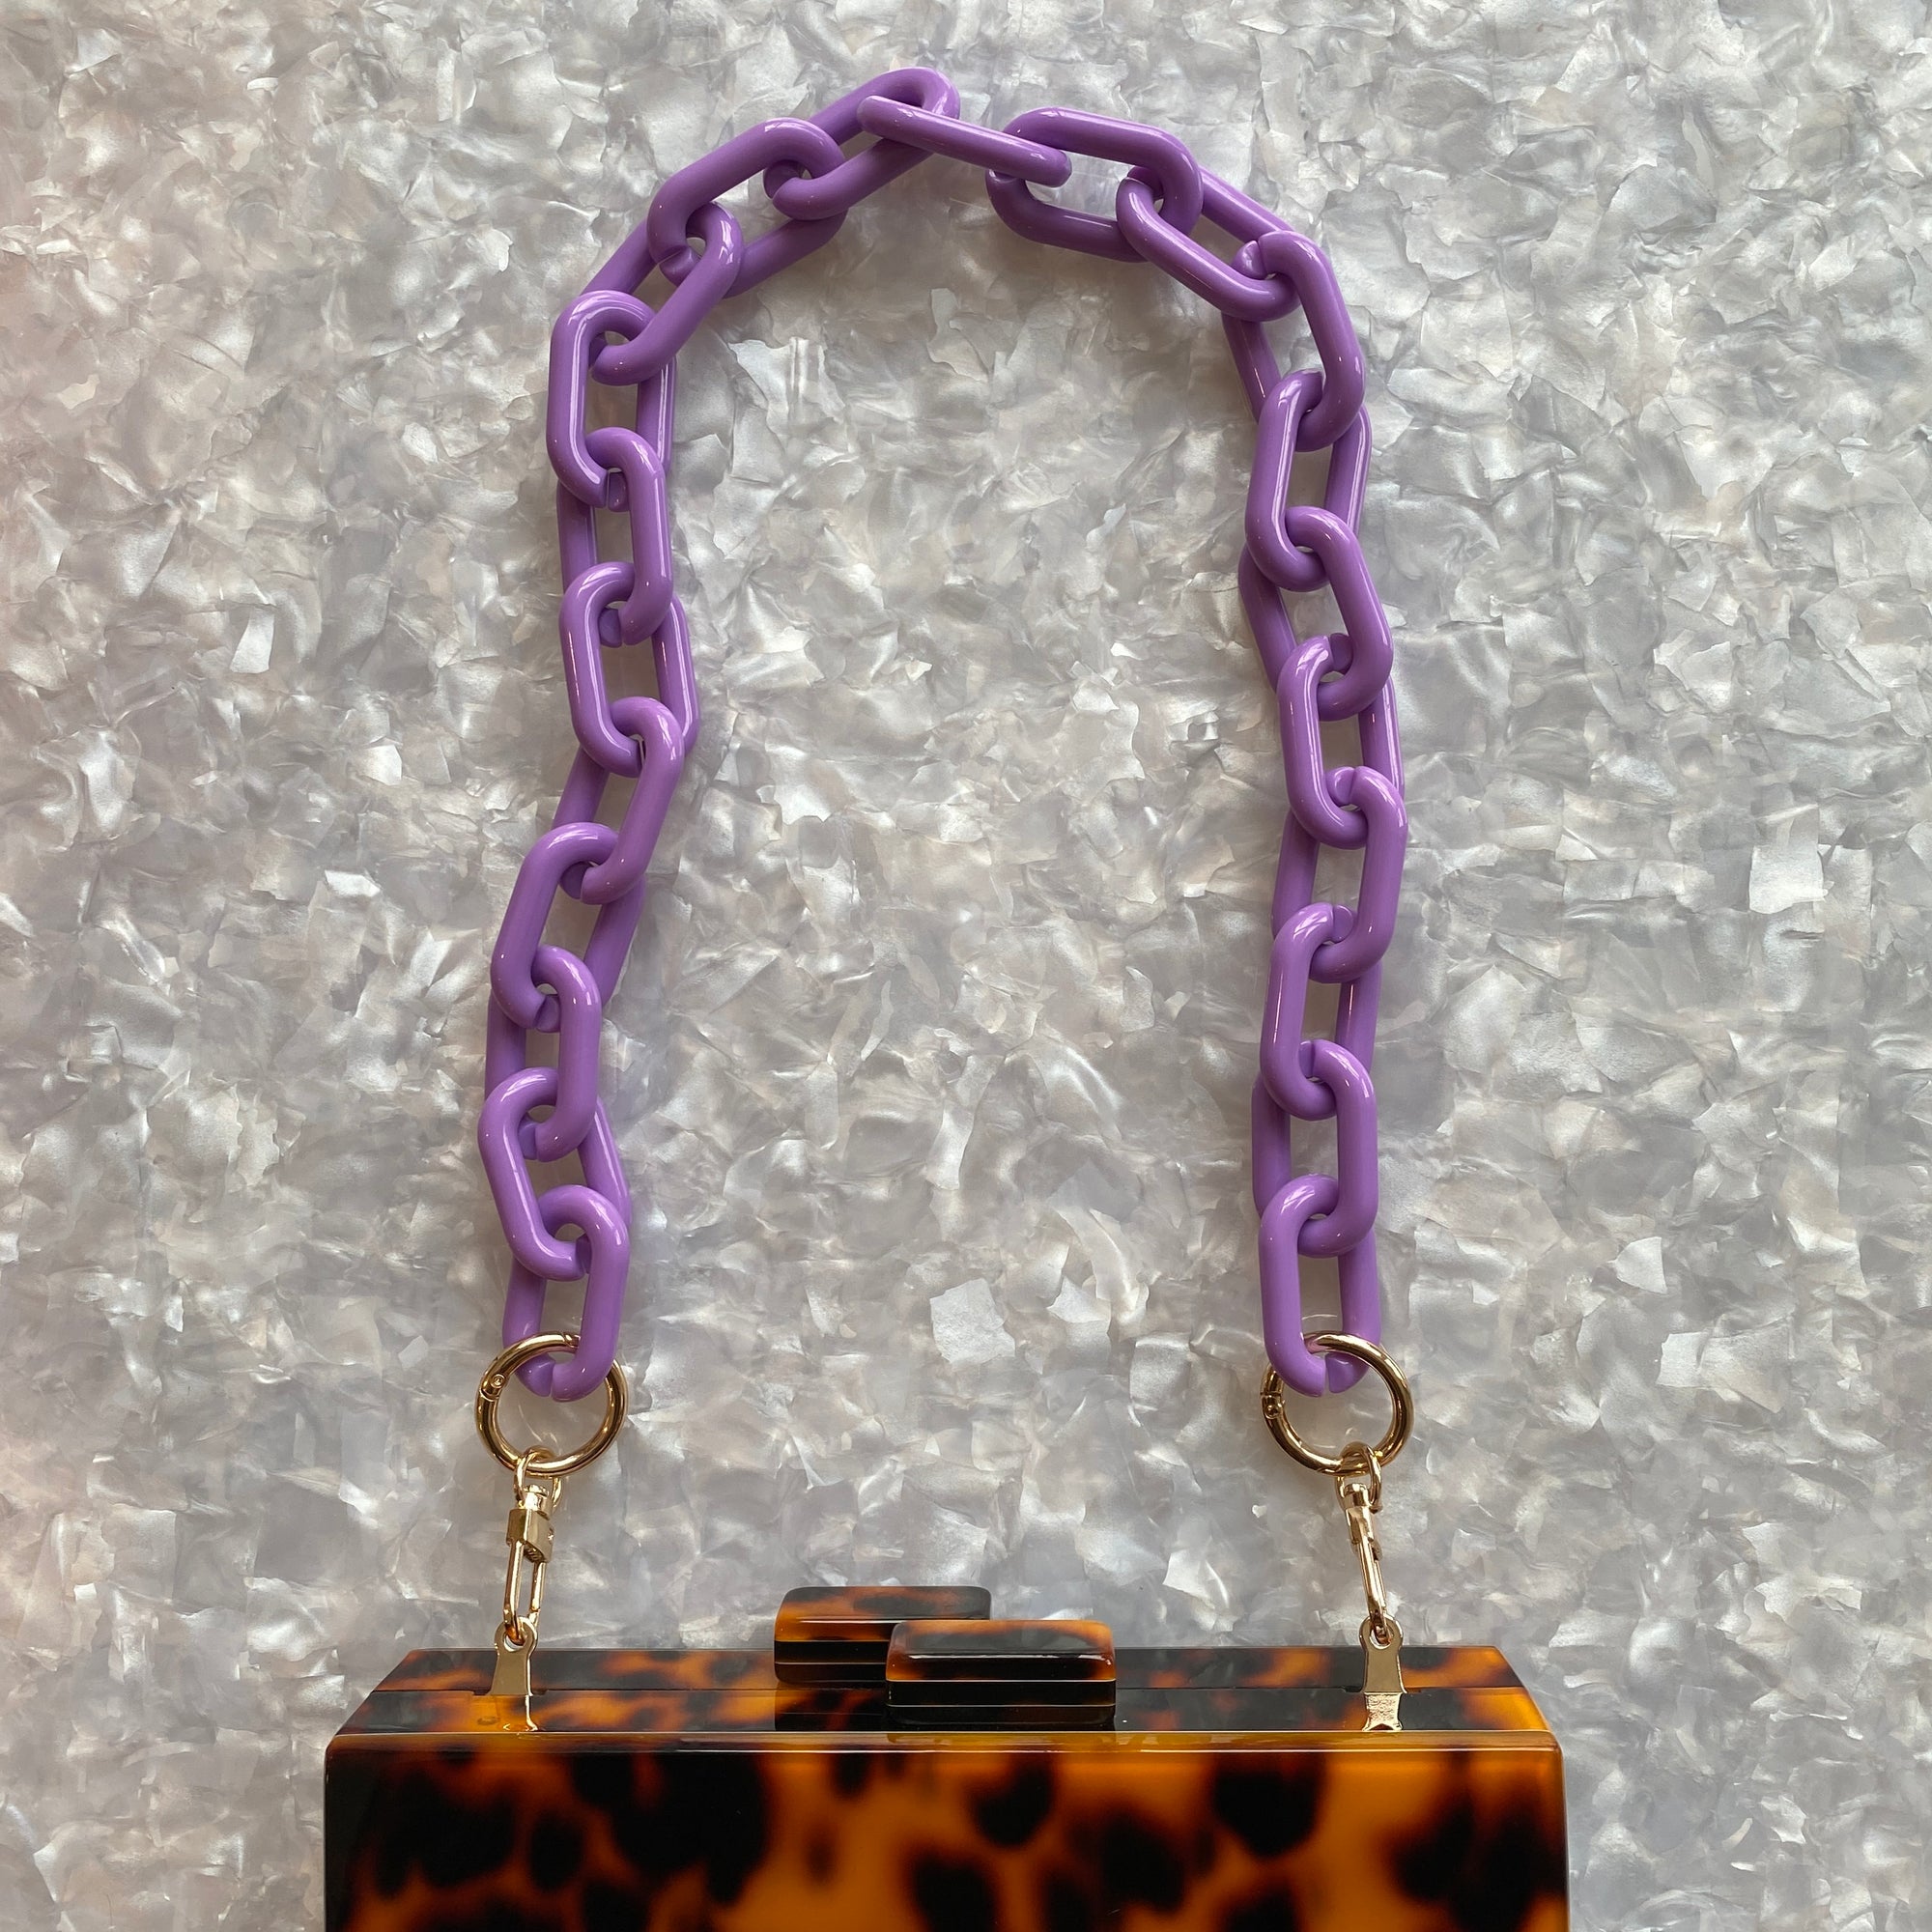 Purple and Gold purse strap